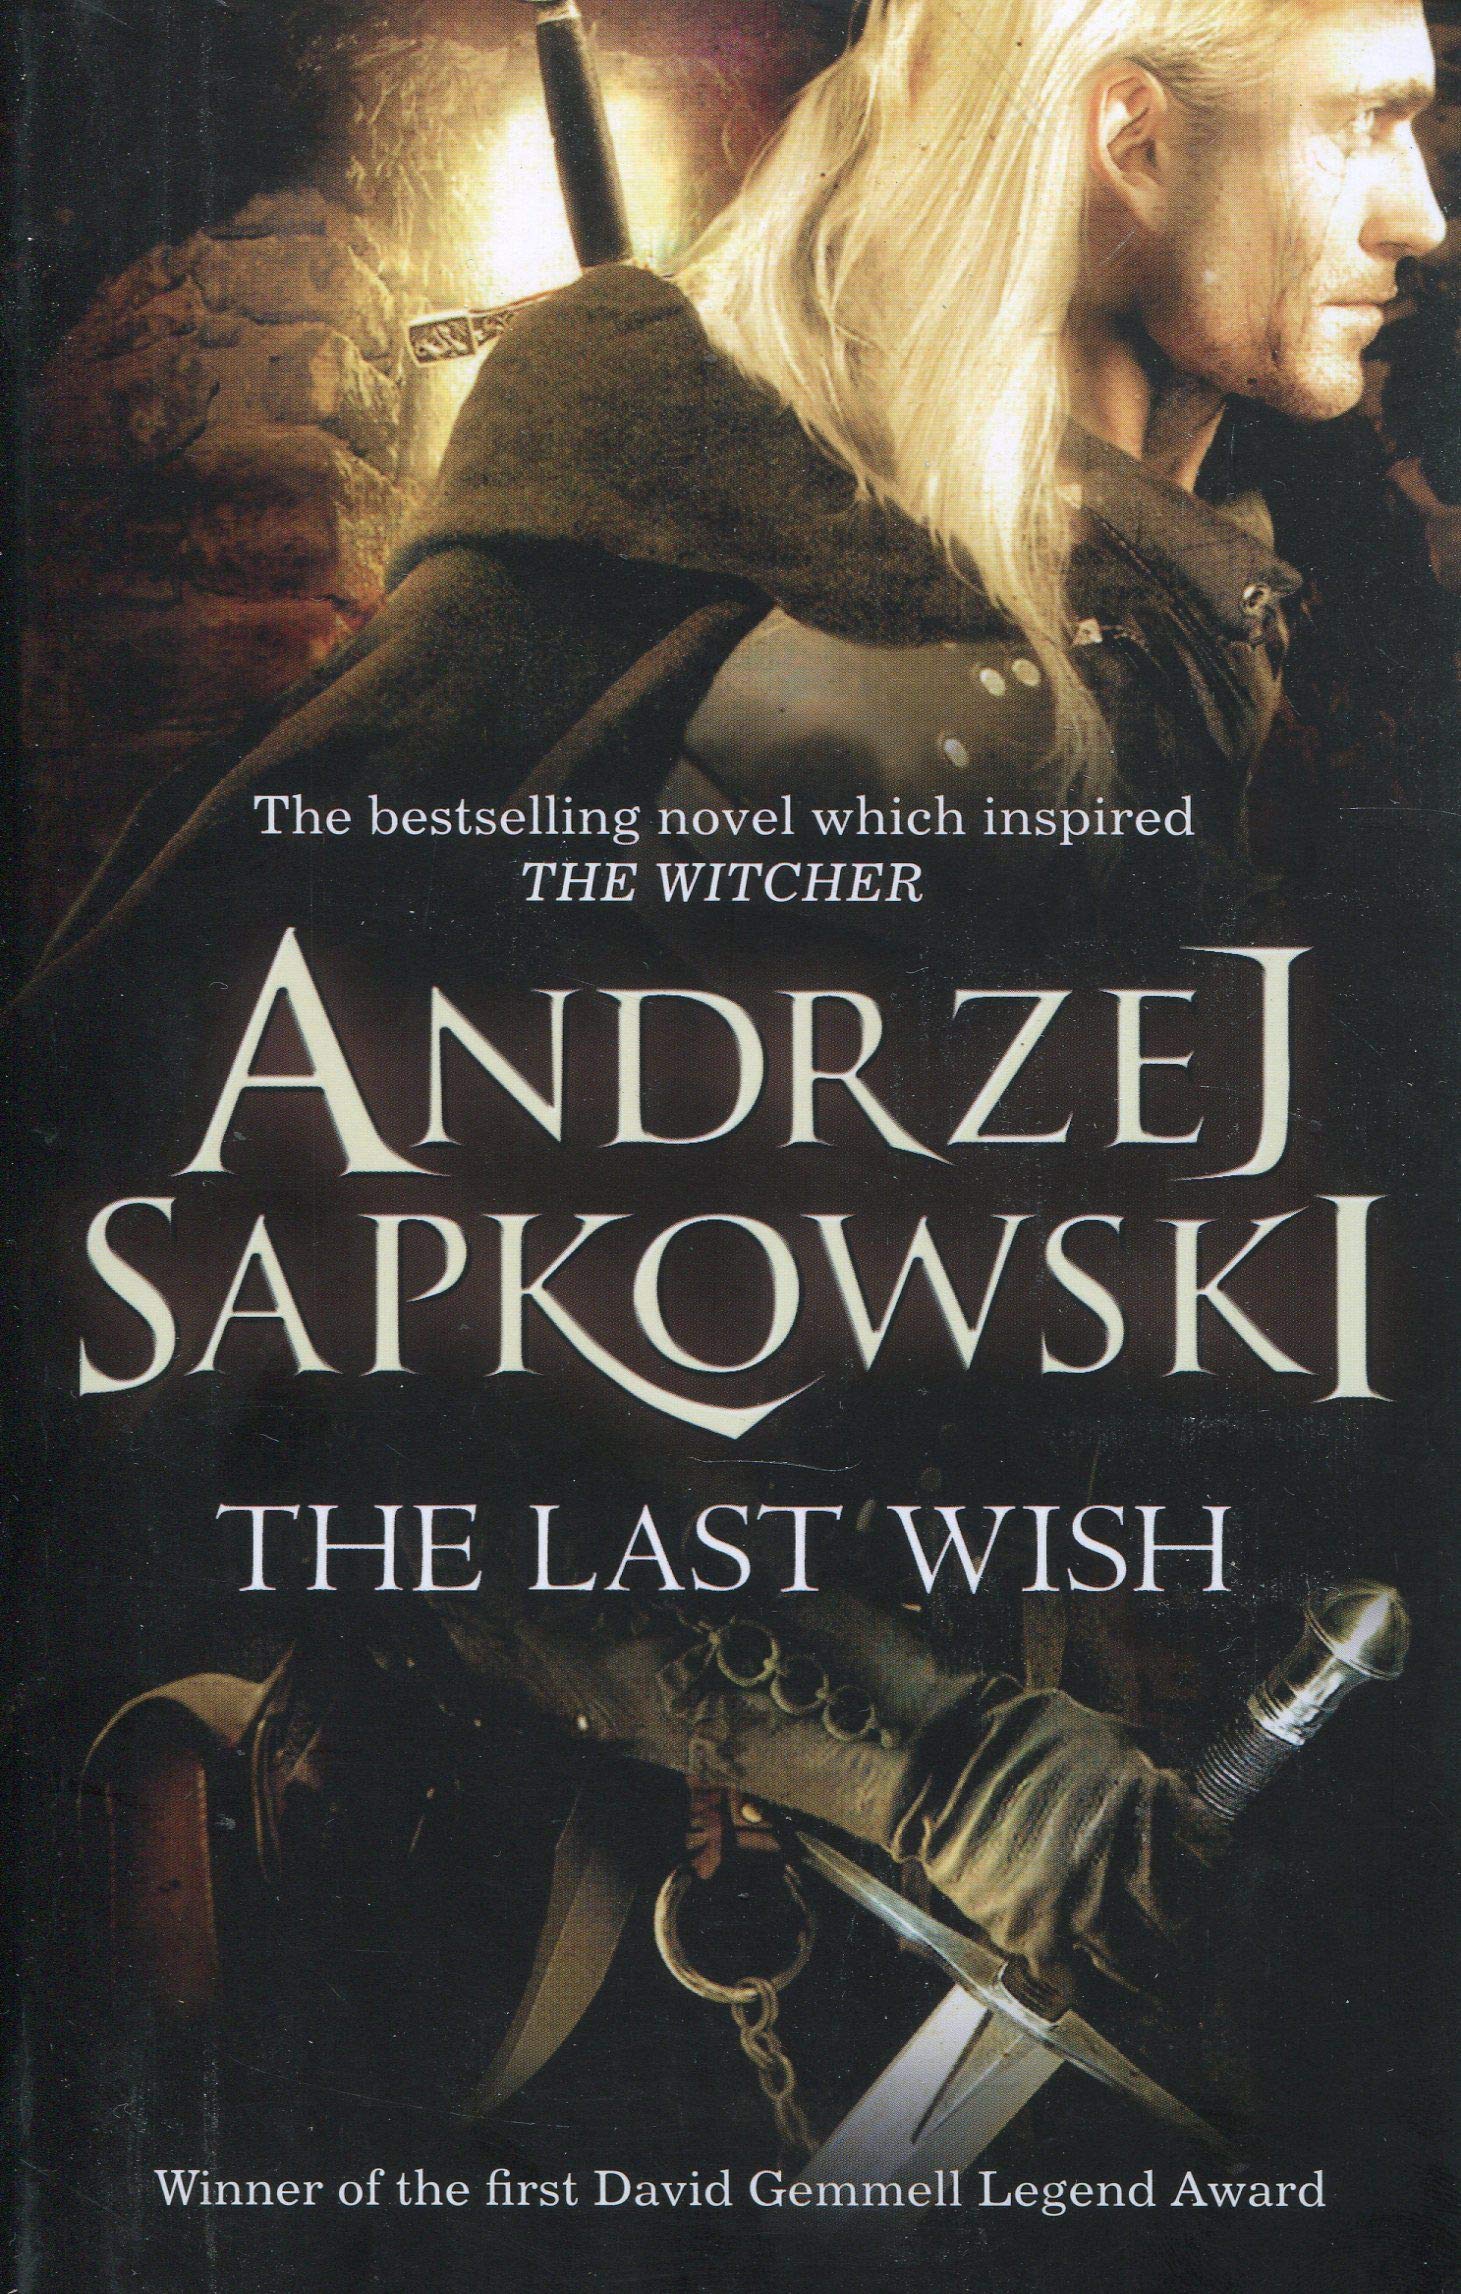 'The Last Wish' by Andrzej Sapkowski (Orbit)